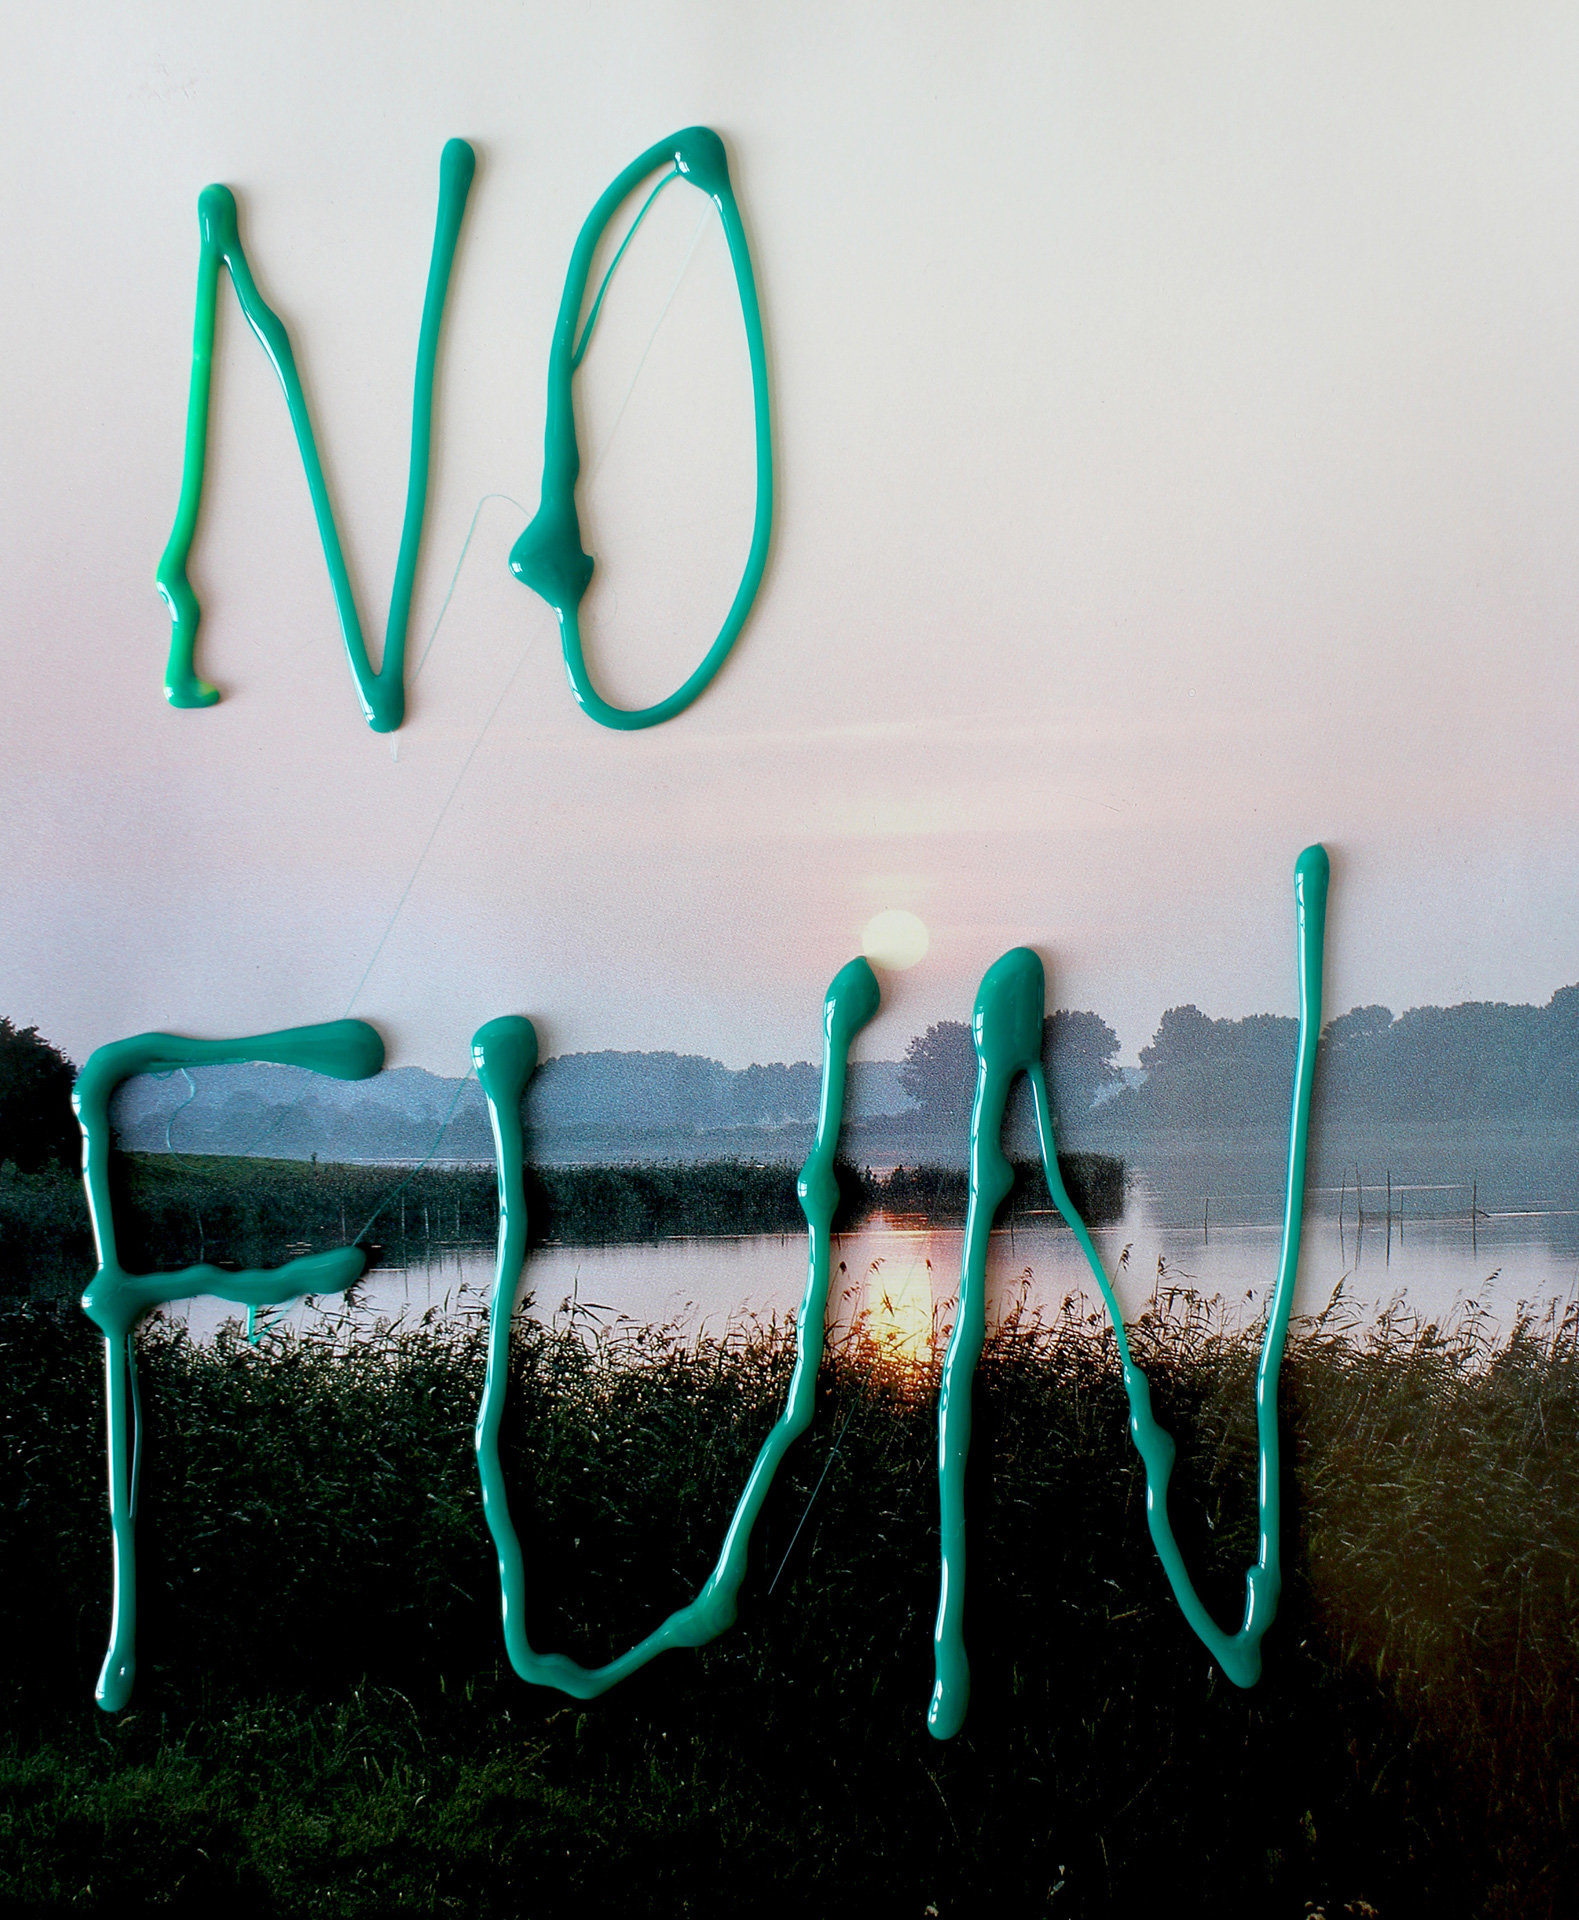 No Fun, 2015